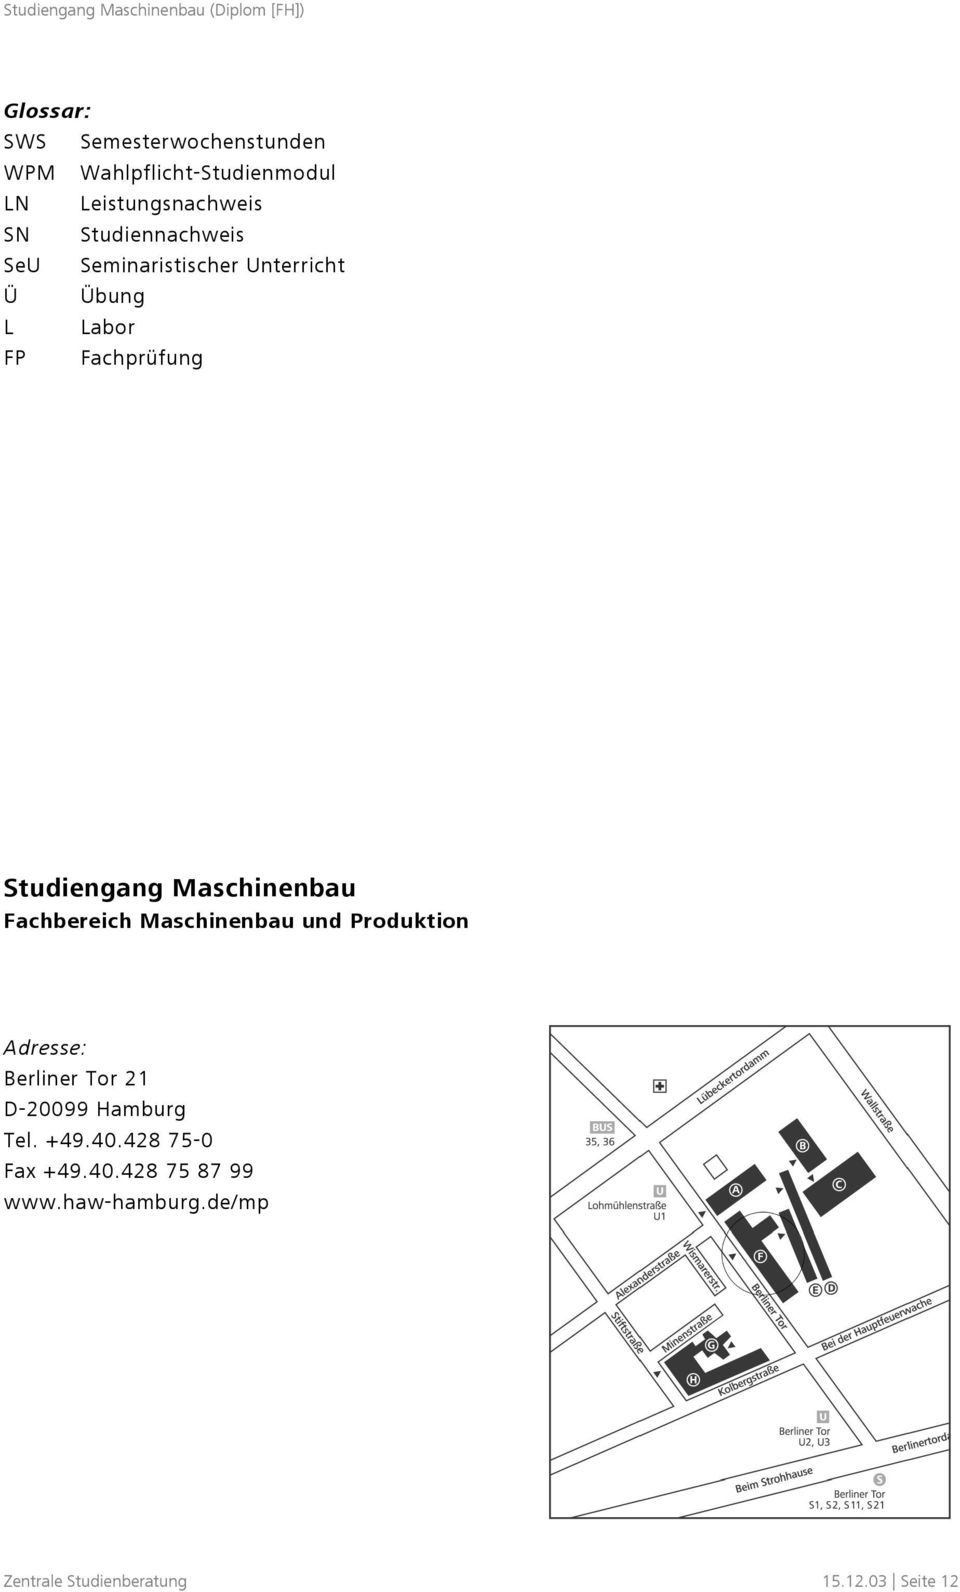 Maschinenbau Fachbereich Maschinenbau und Produktion Adresse: Berliner Tor 21 D-20099 Hamburg